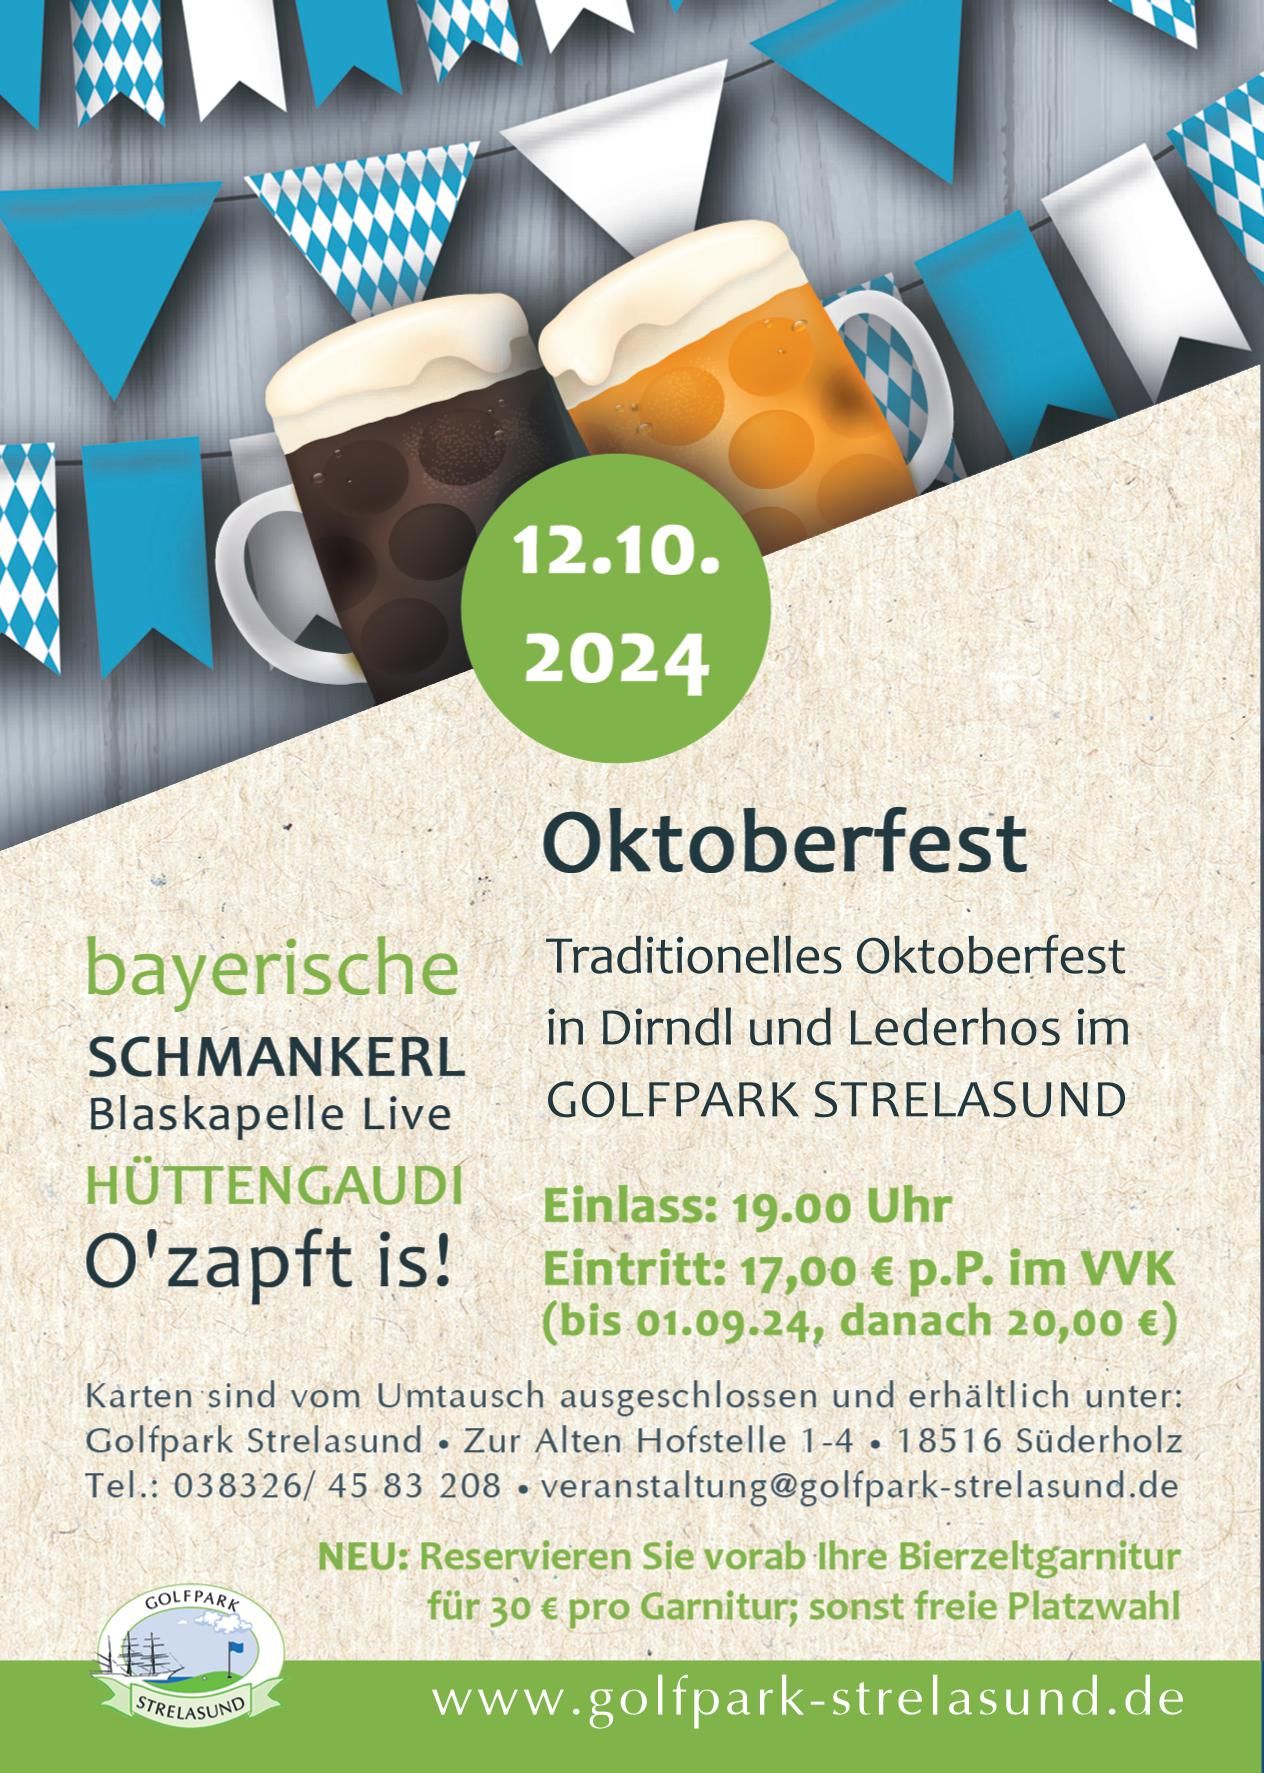 Oktoberfest im Golfpark Strelasund 12.10.2024